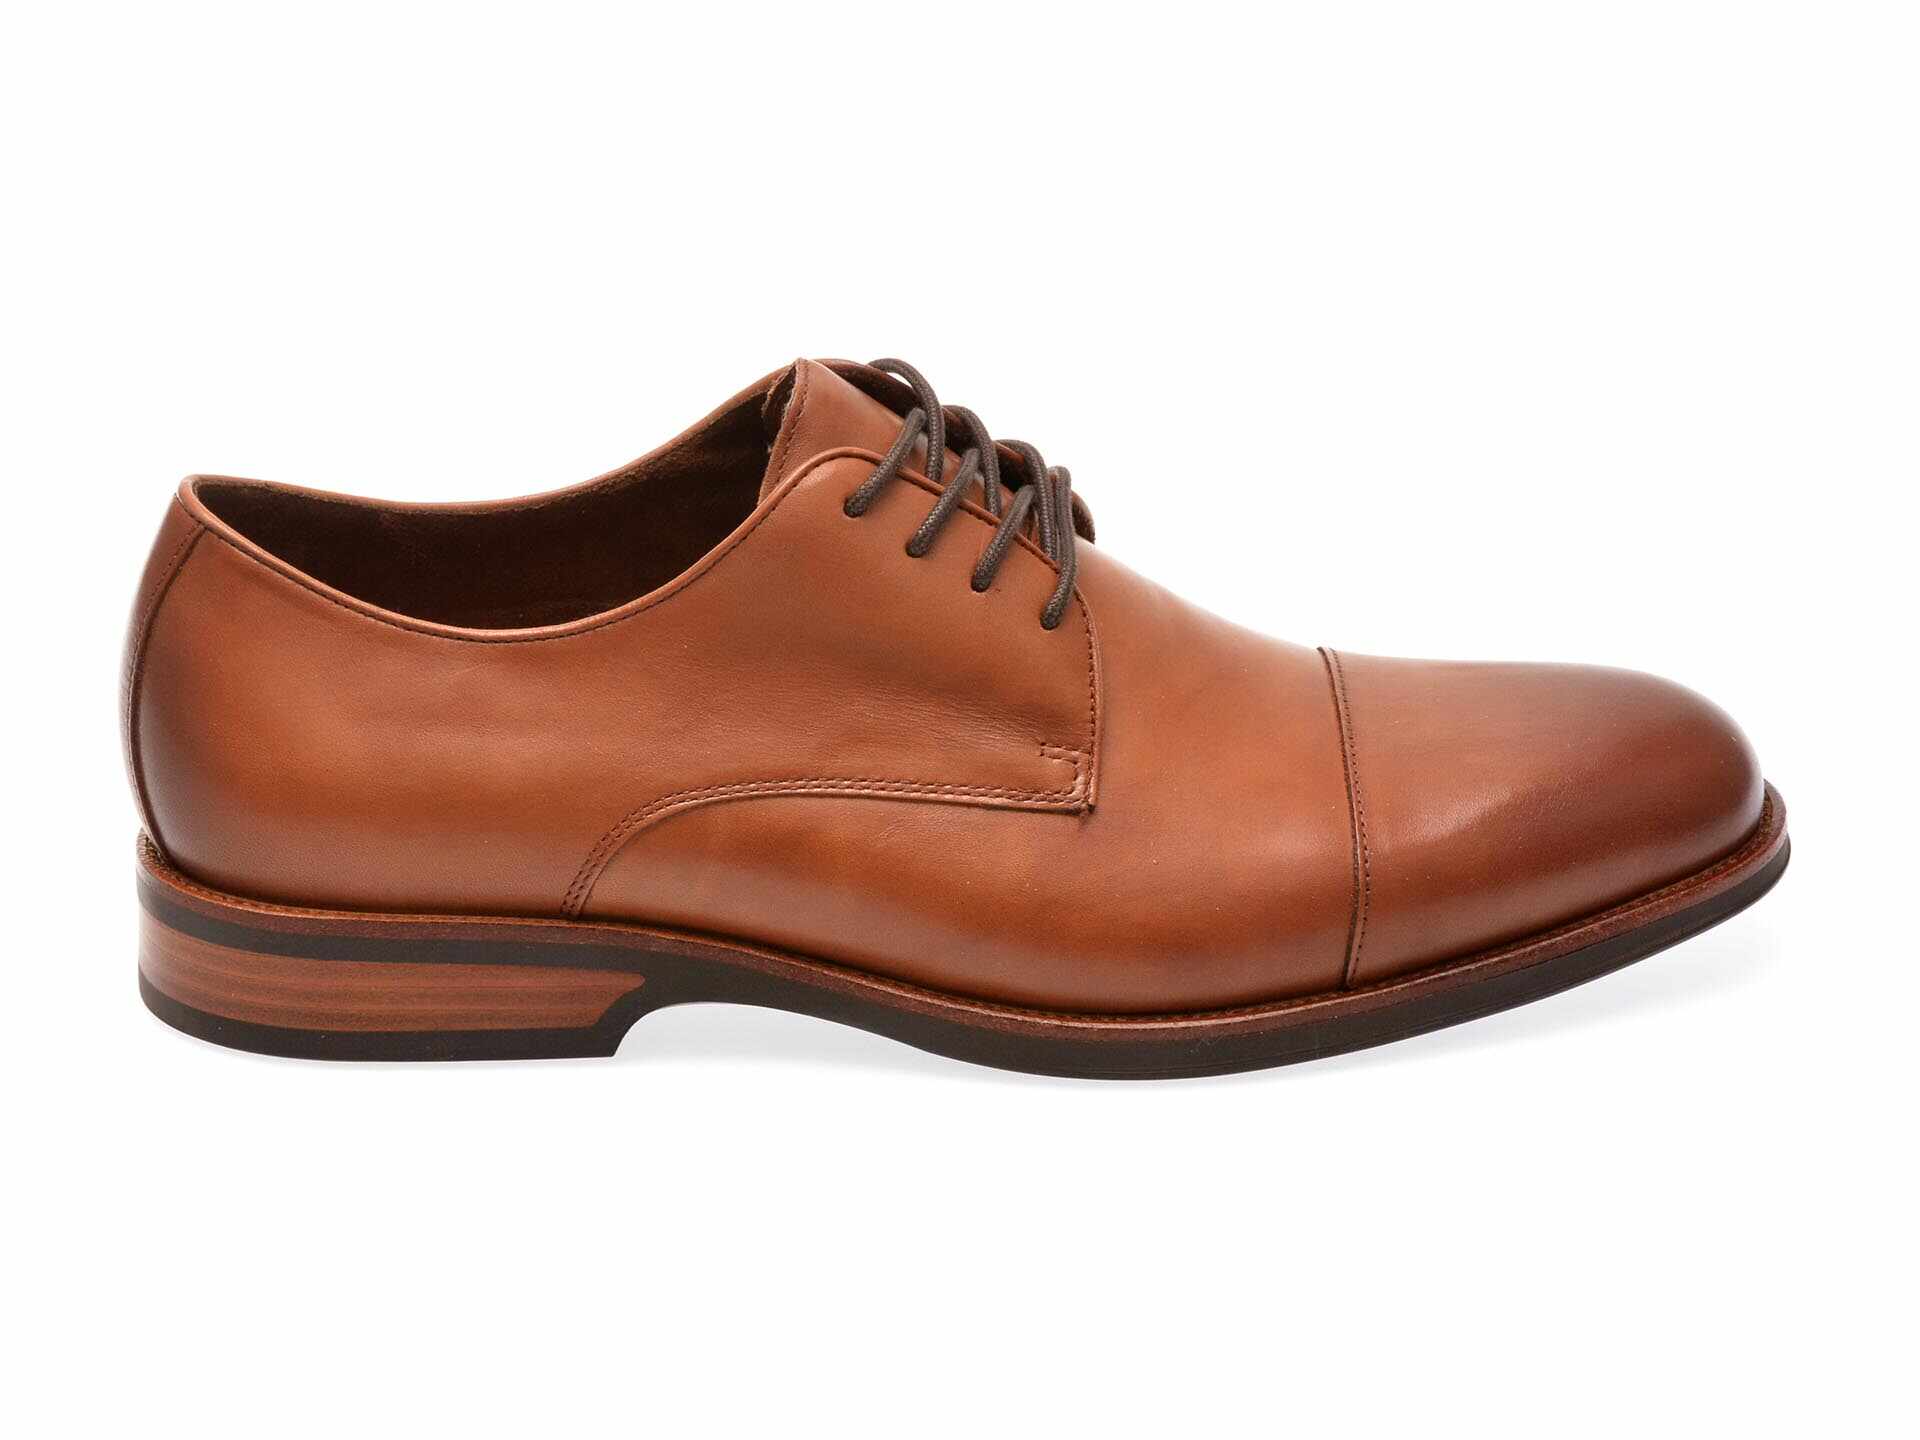 Pantofi eleganti ALDO maro, 13749056, din piele naturala